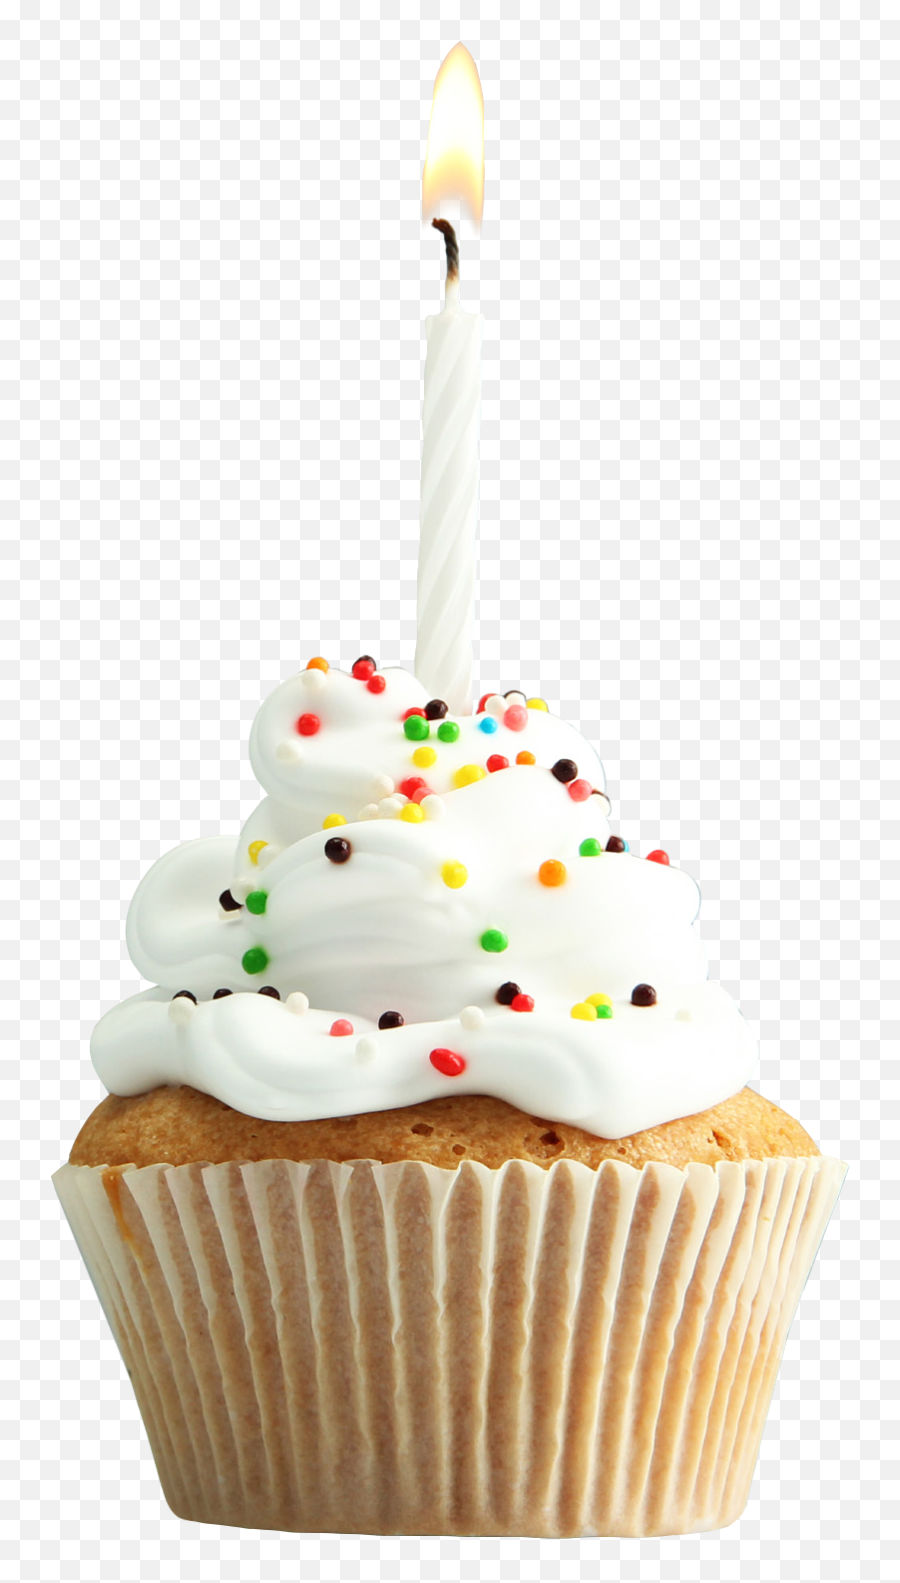 Cupcake Muffin Tart Torte Birthday Cake - Transparent Background Birthday Cupcake Png,Birthday Cupcake Png